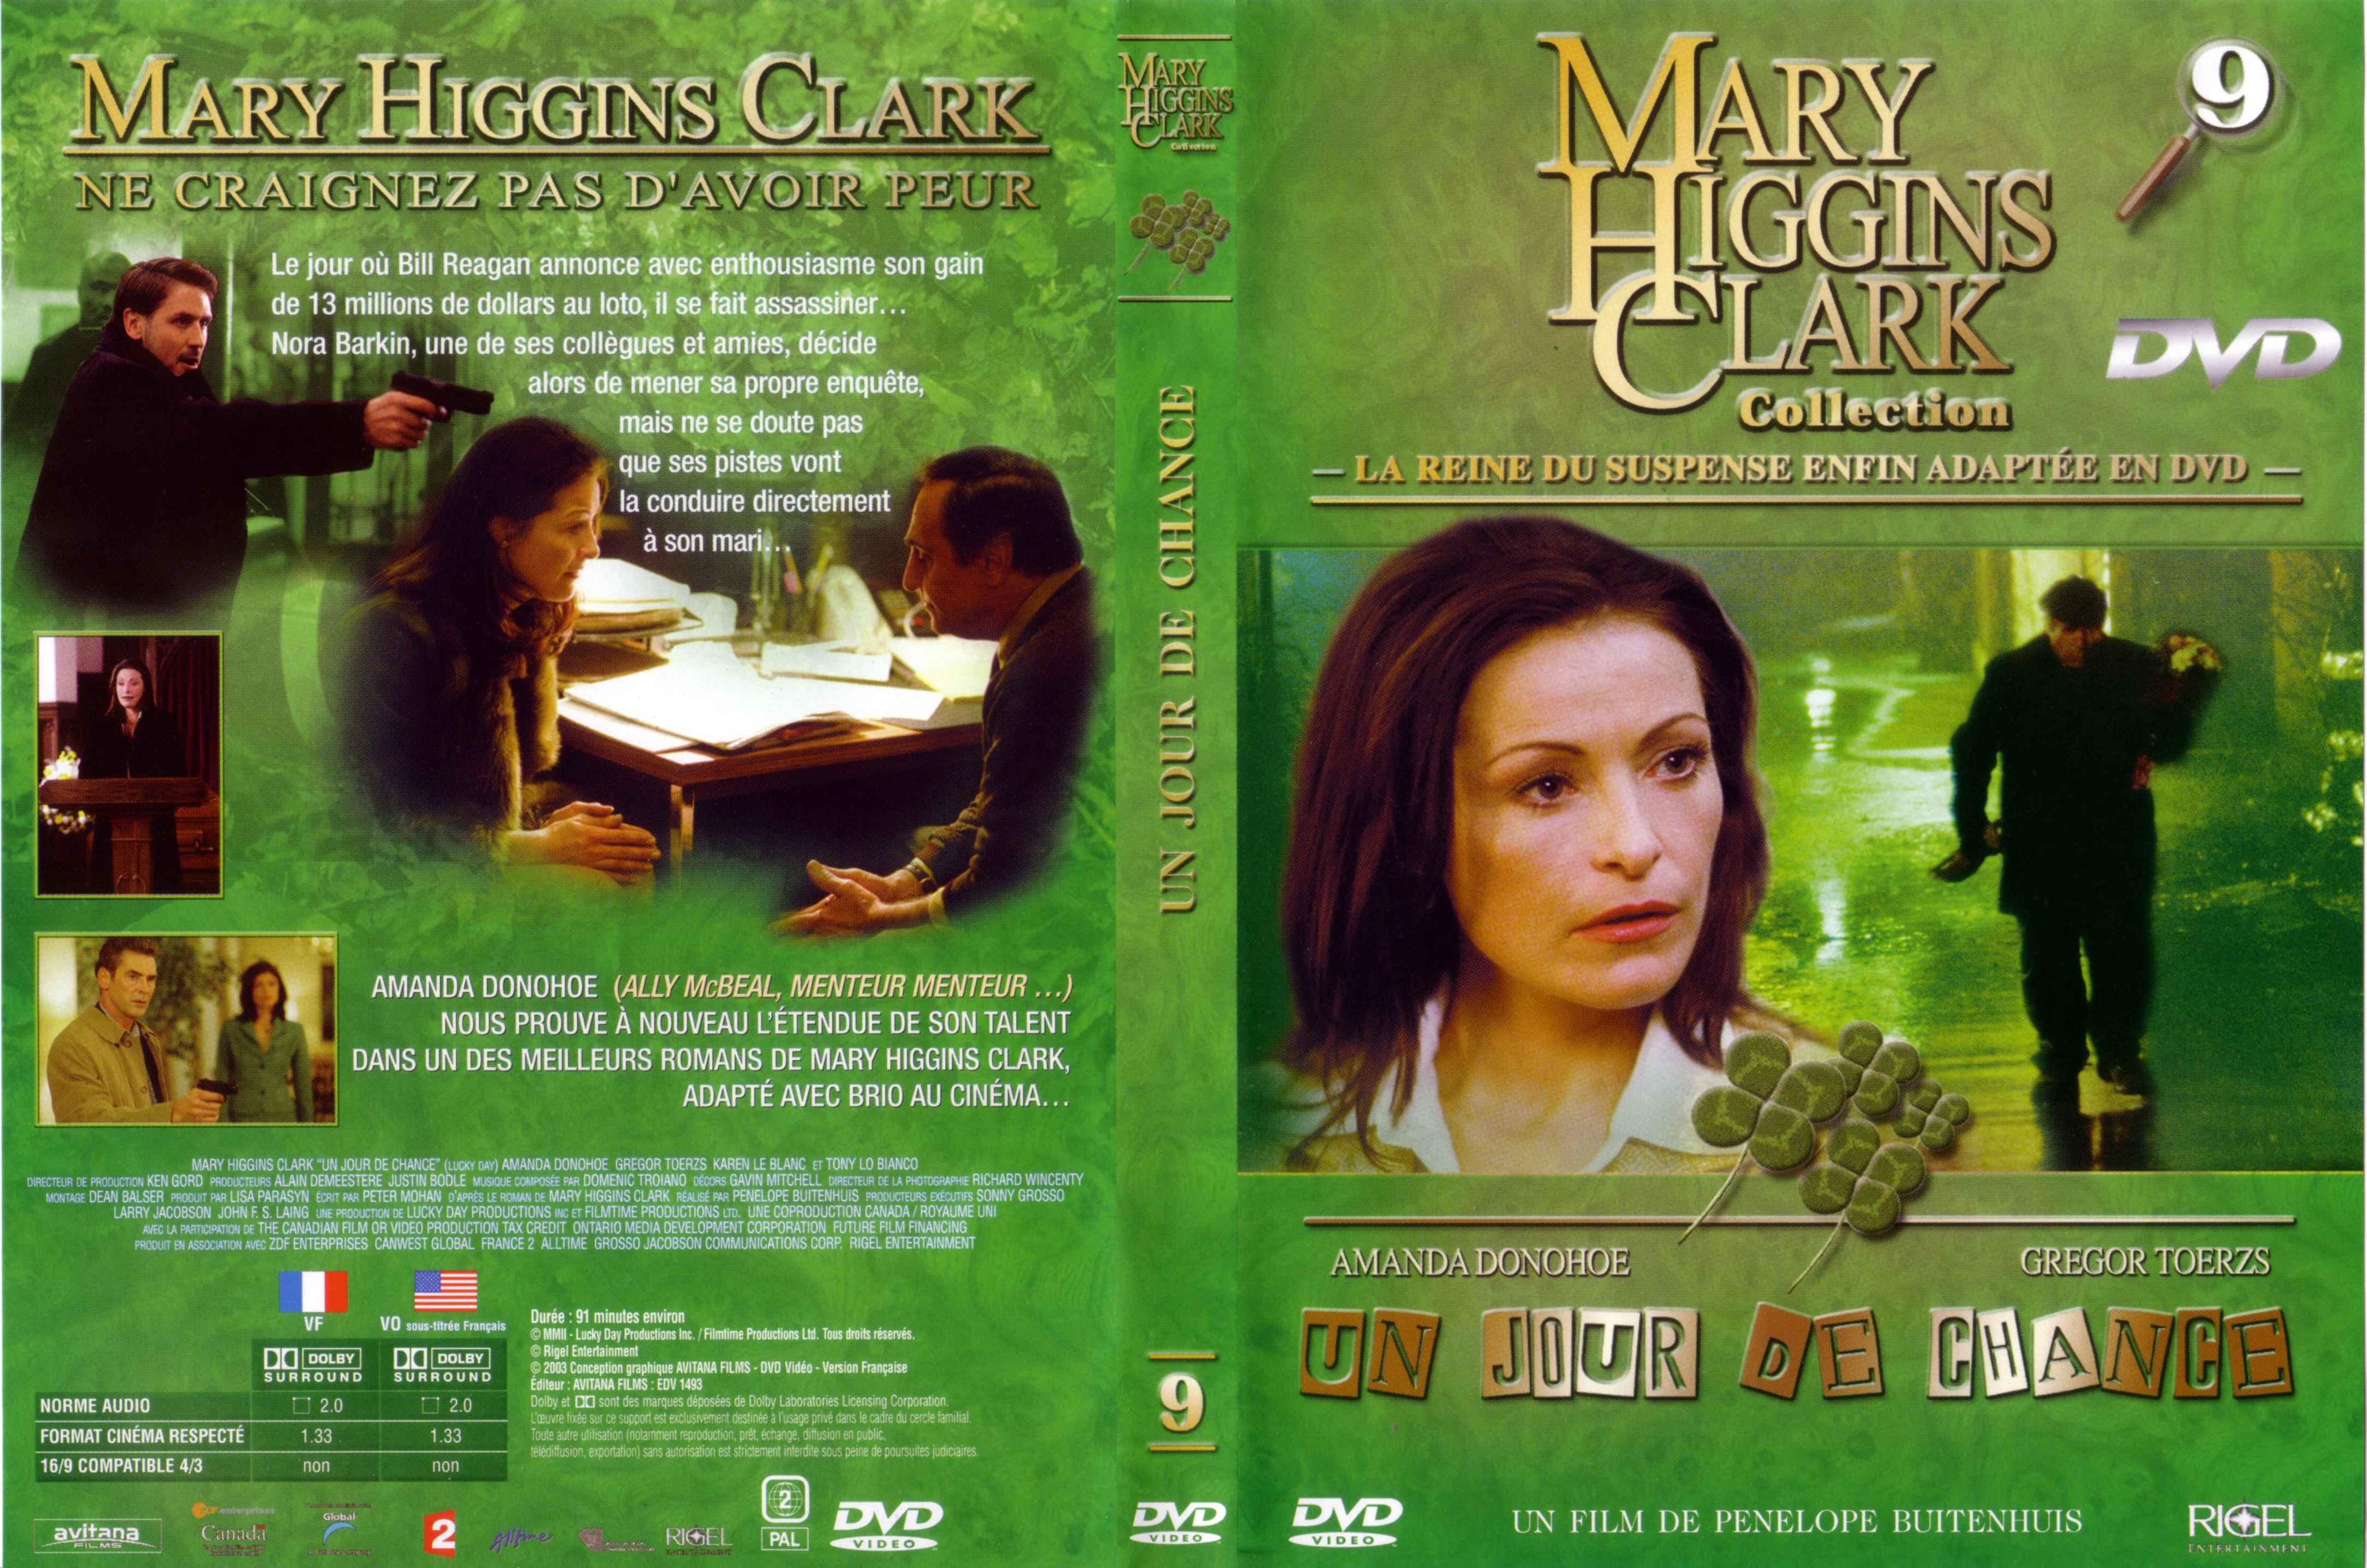 Jaquette DVD de Mary Higgins Clark vol 09 - Un jour de chance - Cinéma Passion4330 x 2869